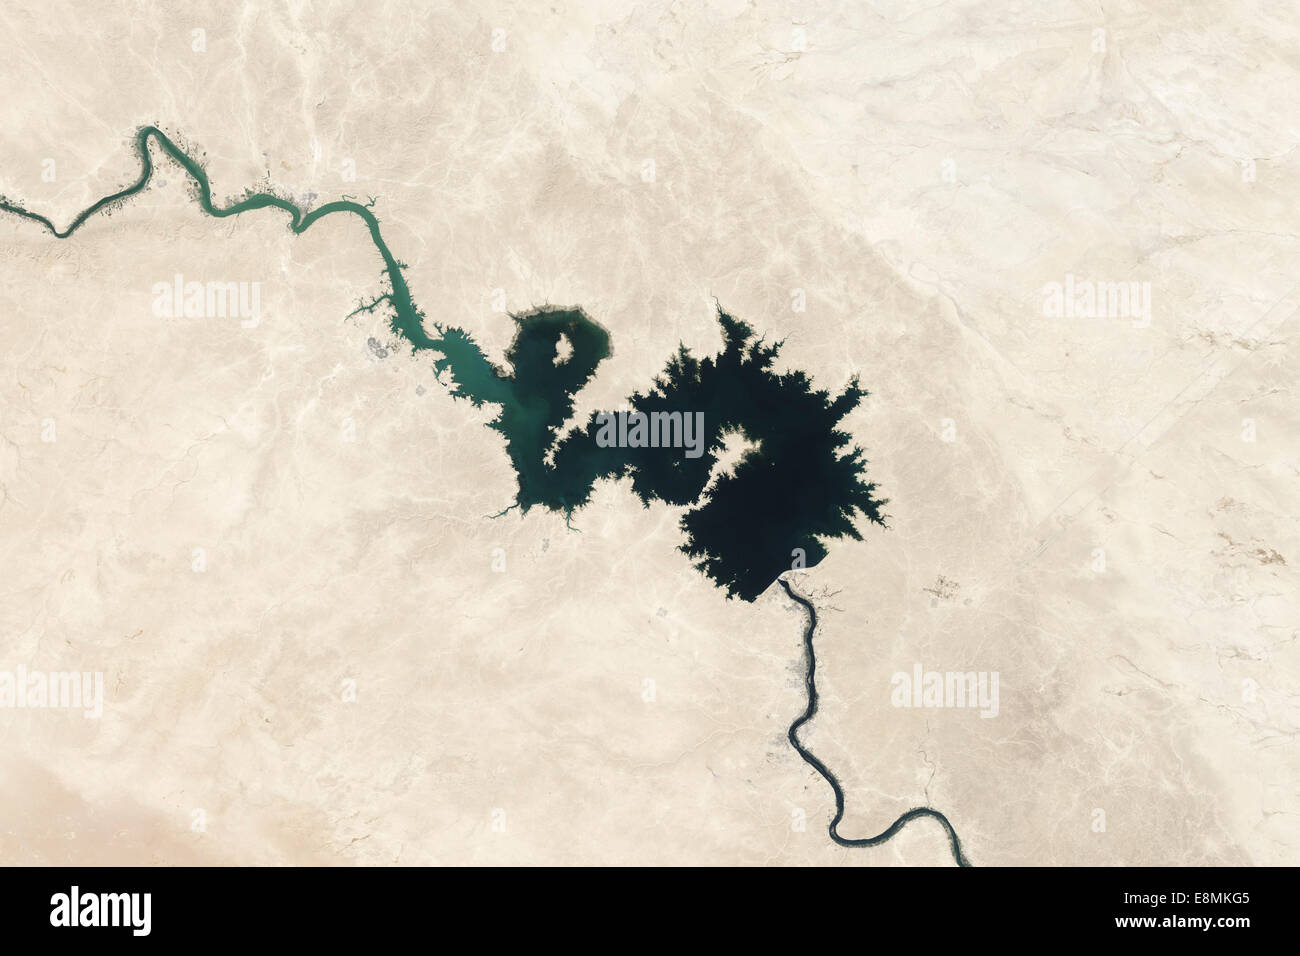 Le 7 septembre 2006 - couleur naturelle image de réservoir de Qadissiya en Iraq. Banque D'Images